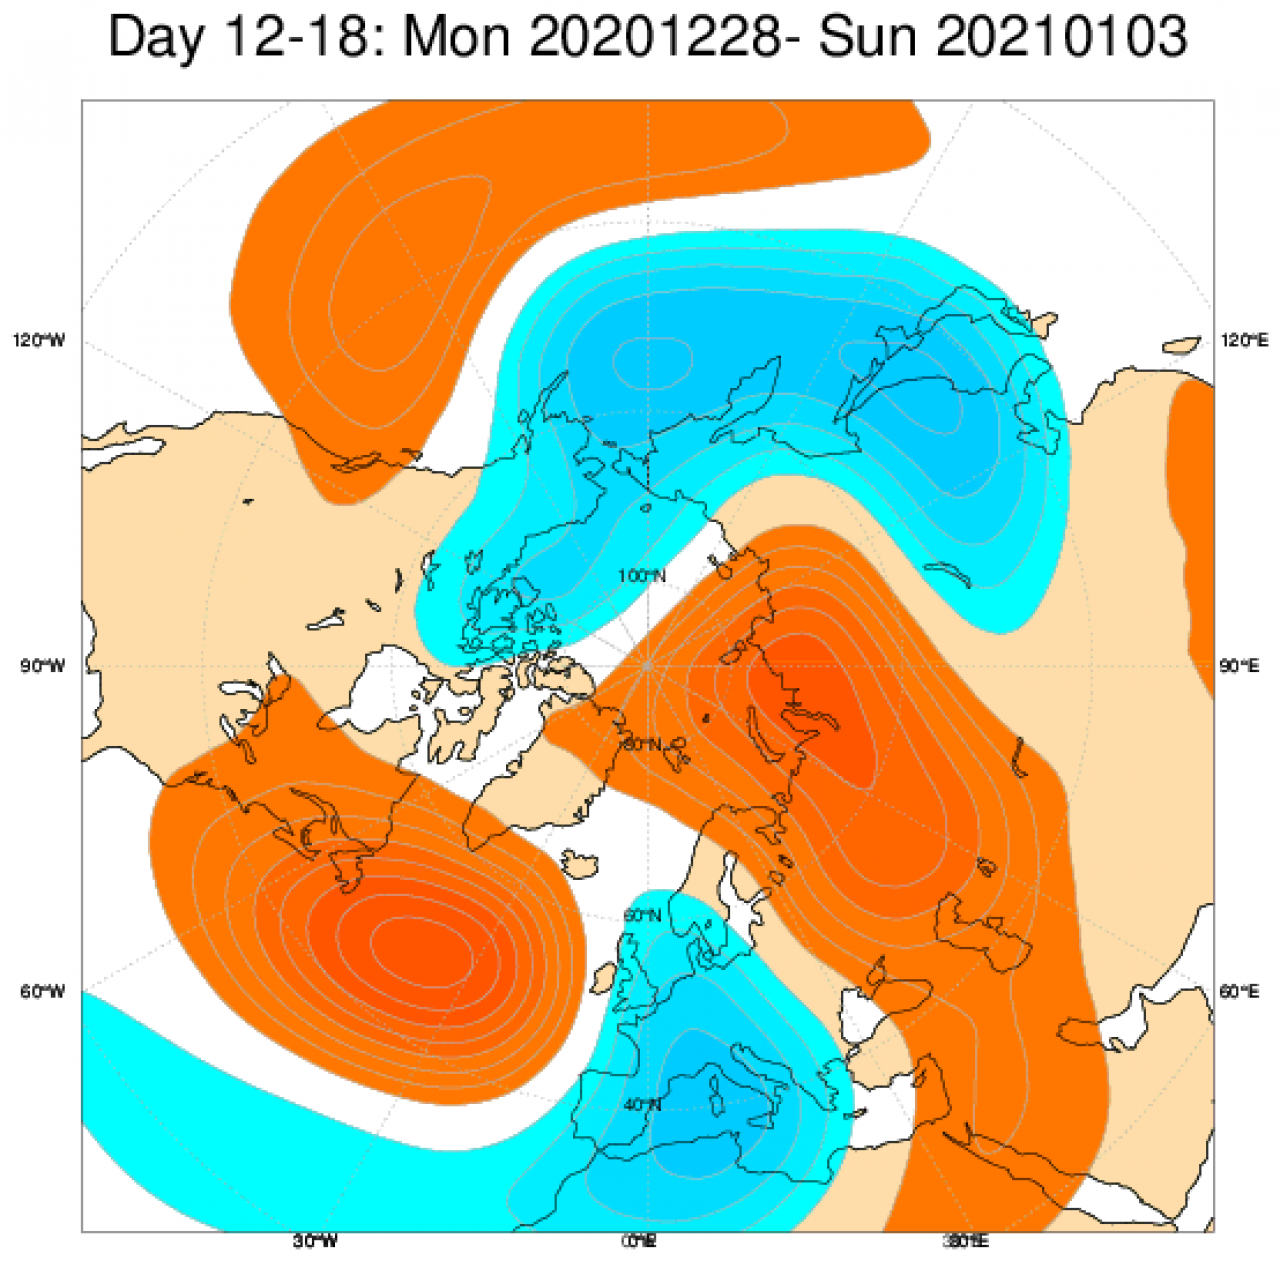 Le anomalie di geopotenziale secondo il modello ECMWF in Europa, mediate nel periodo 28 dicembre - 3 gennaio